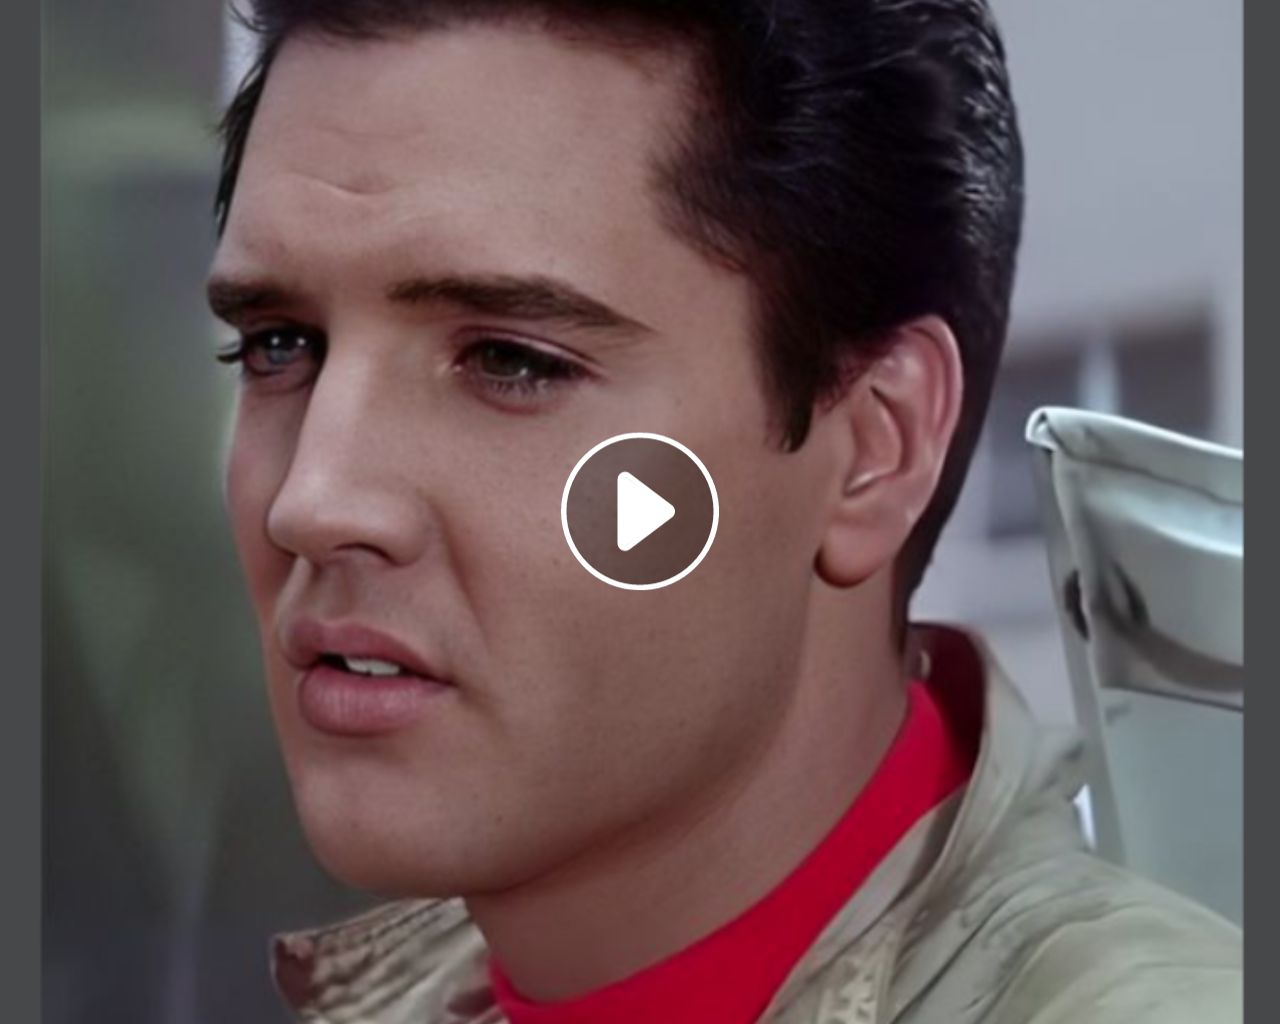 Elvis Presley - "Help Me"